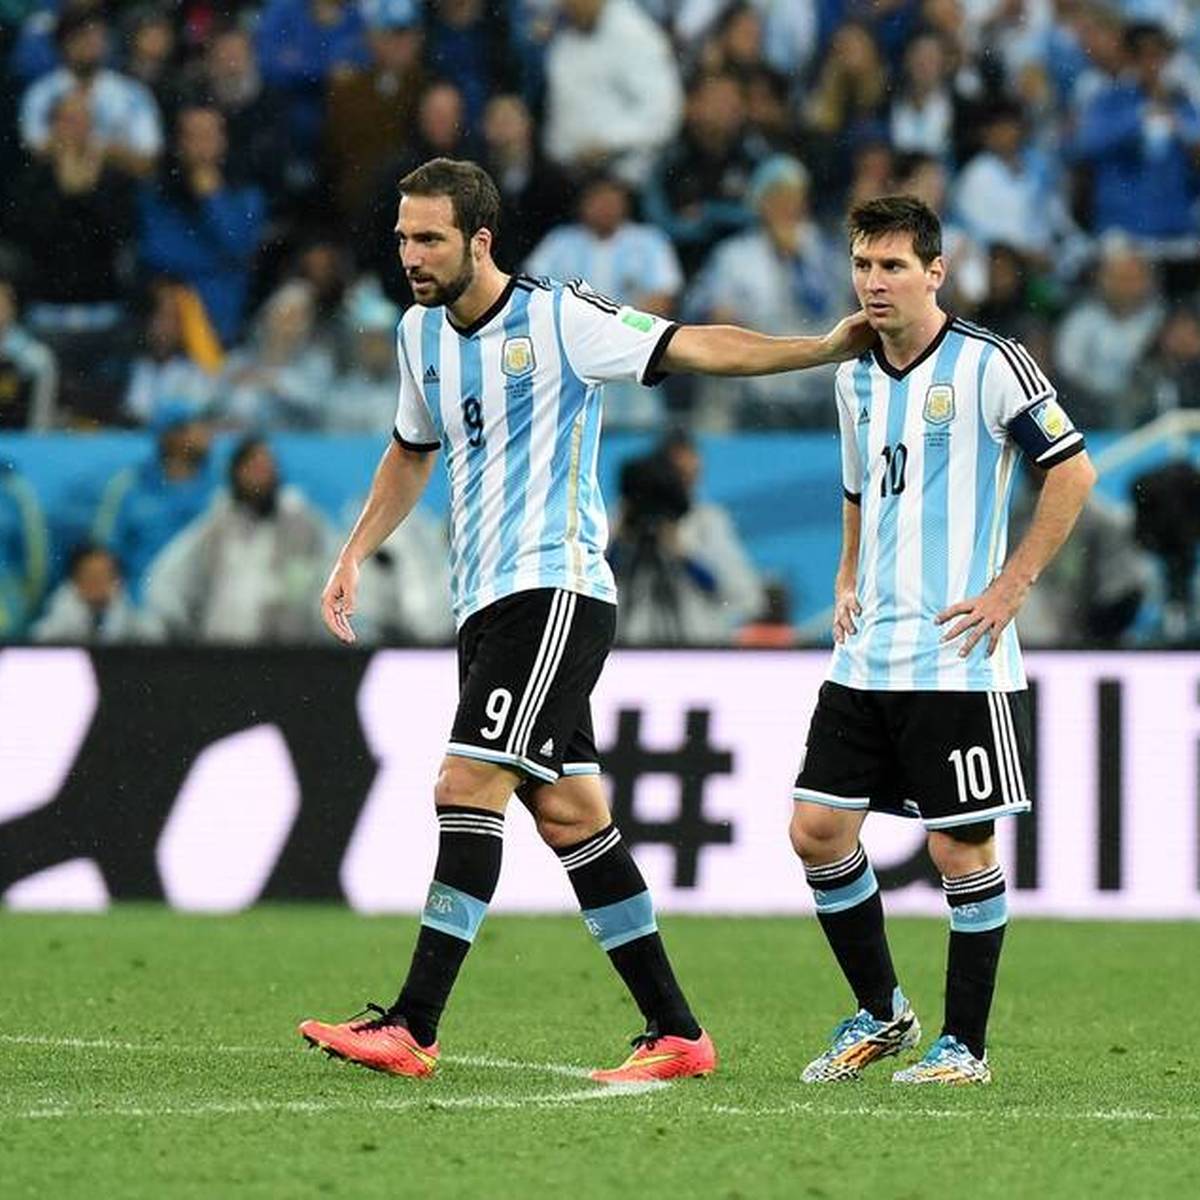 Gonzalo Higuaín verkündet sein Karriereende. Der Argentinier wird sich nach der noch laufenden MLS-Saison in den Ruhestand verabschieden.